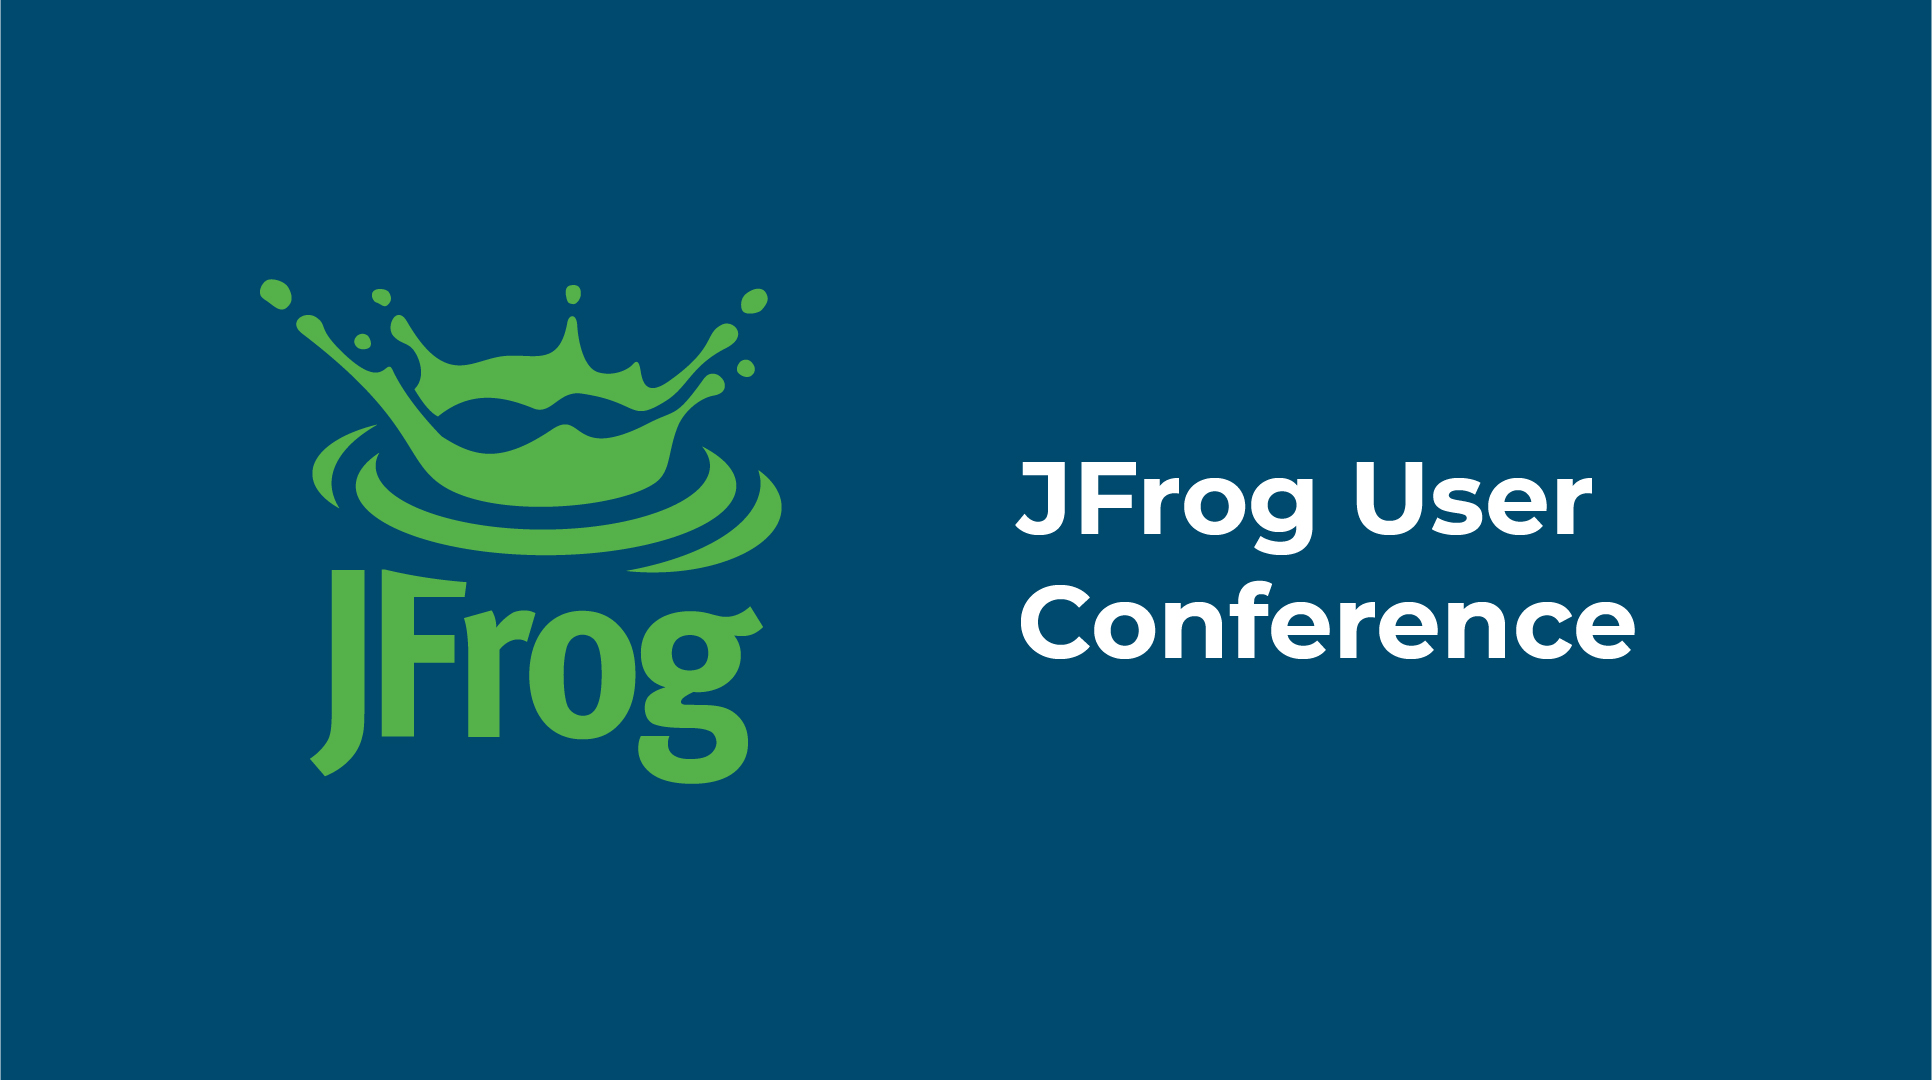 JFrog User Conference